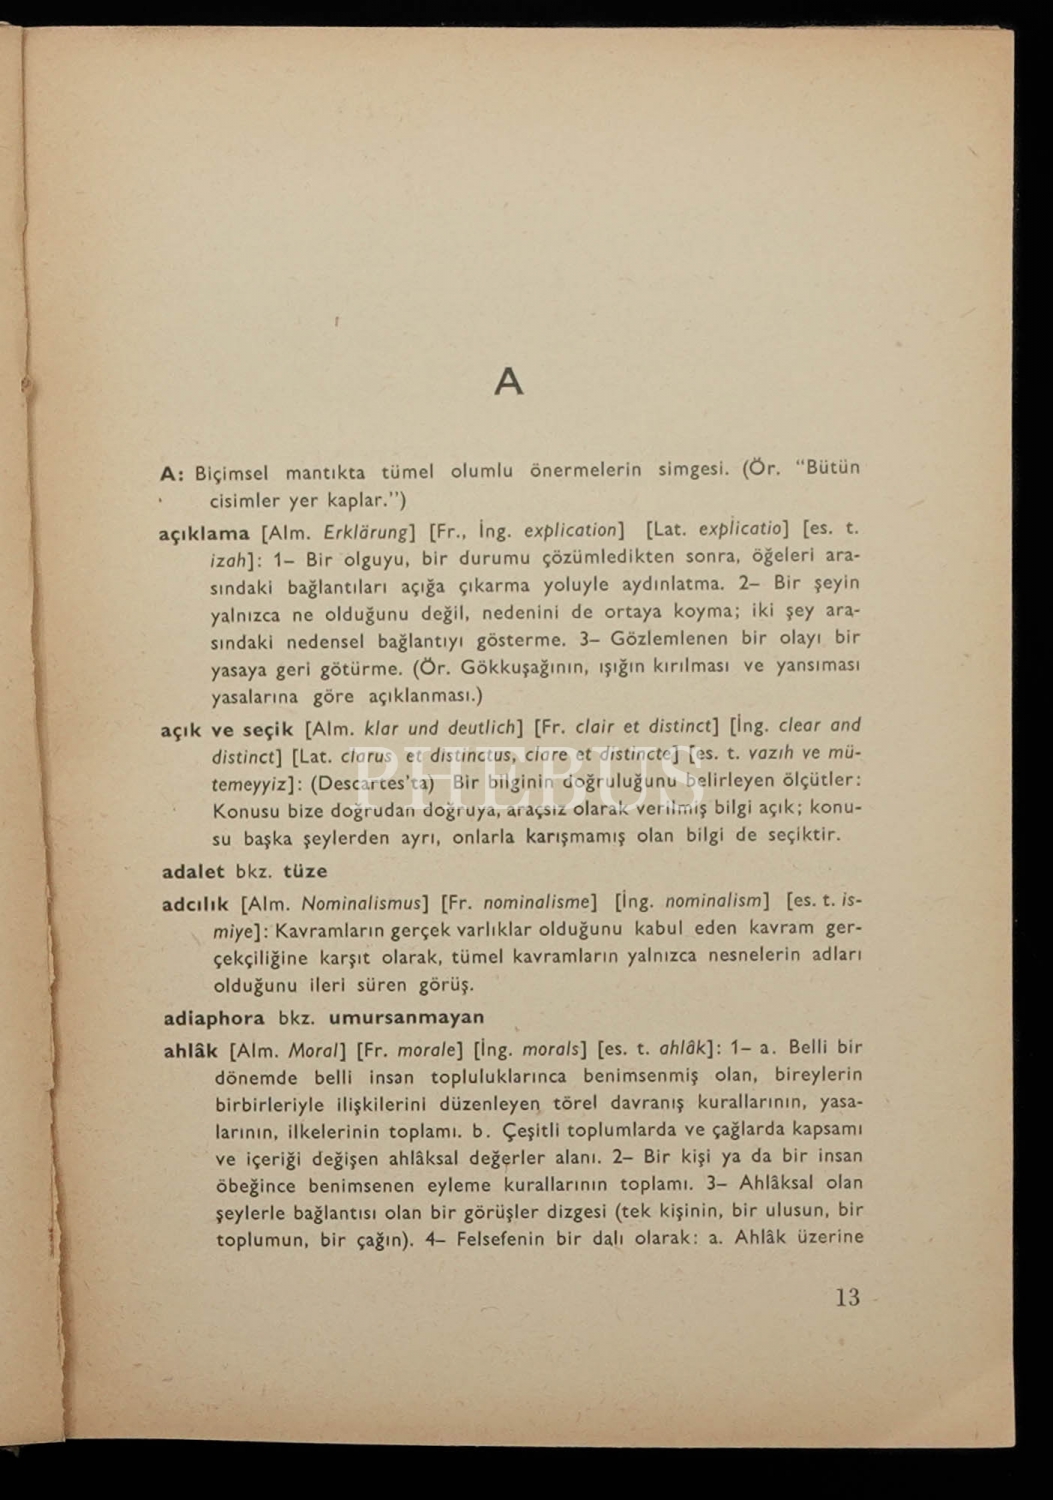 FELSEFE TERİMLERİ SÖZLÜĞÜ, Prof. Dr. Bedia Akarsu, 1975, Türk Dil Kurumu Yayınları, 236 sayfa, 14x20 cm...